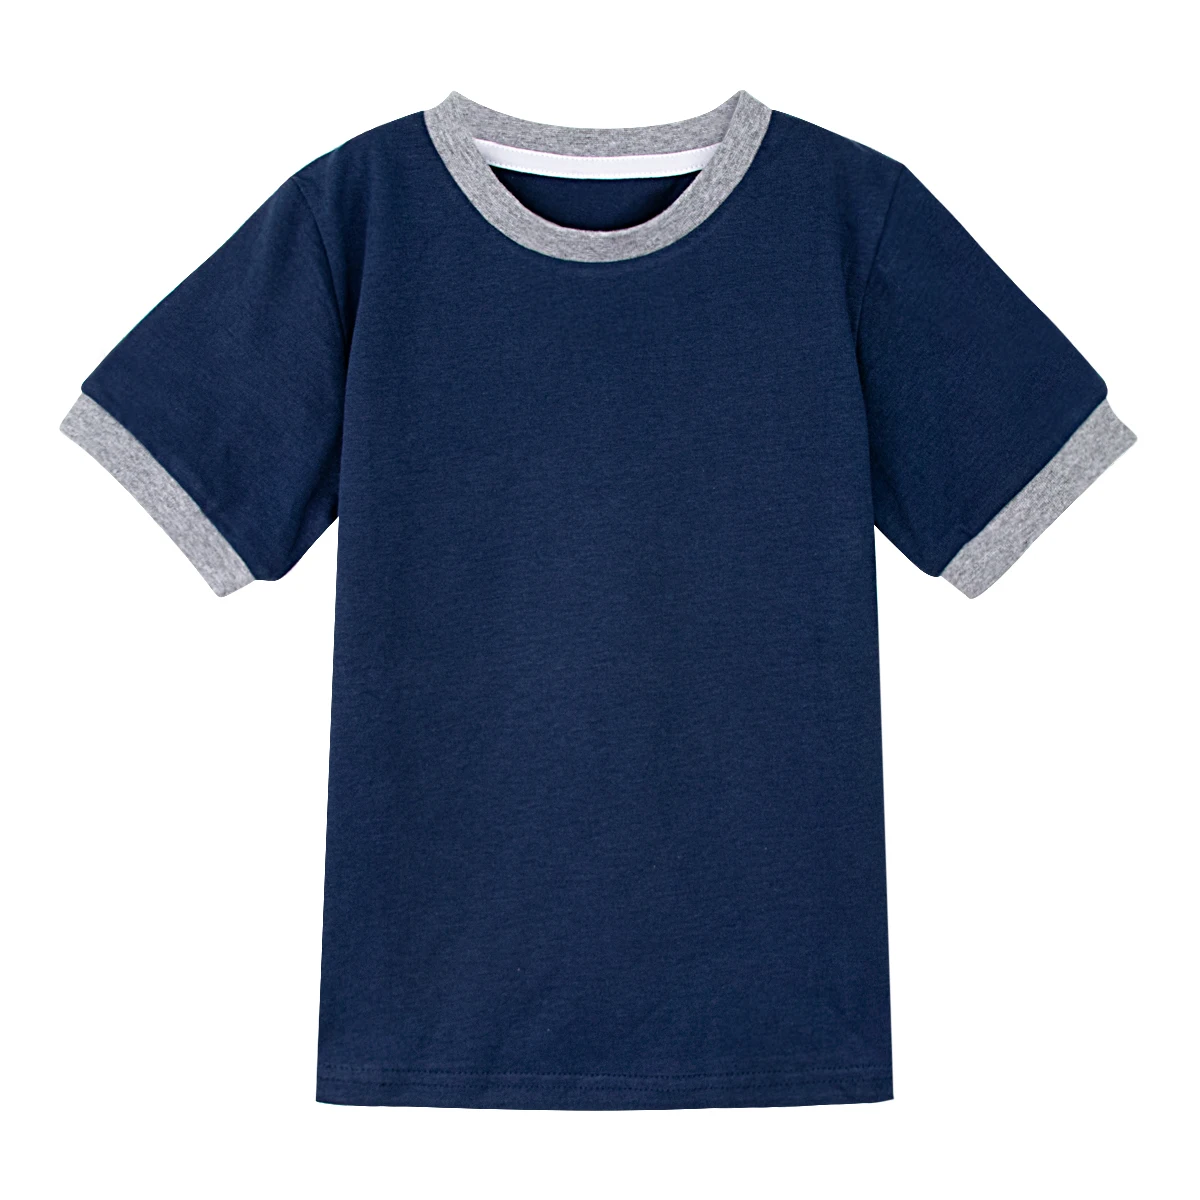 Простая футболка для маленьких мальчиков и девочек, цветная футболка с рисунком звонка, пустые майки для малышей, Однотонная футболка для малышей, детская хлопковая футболка